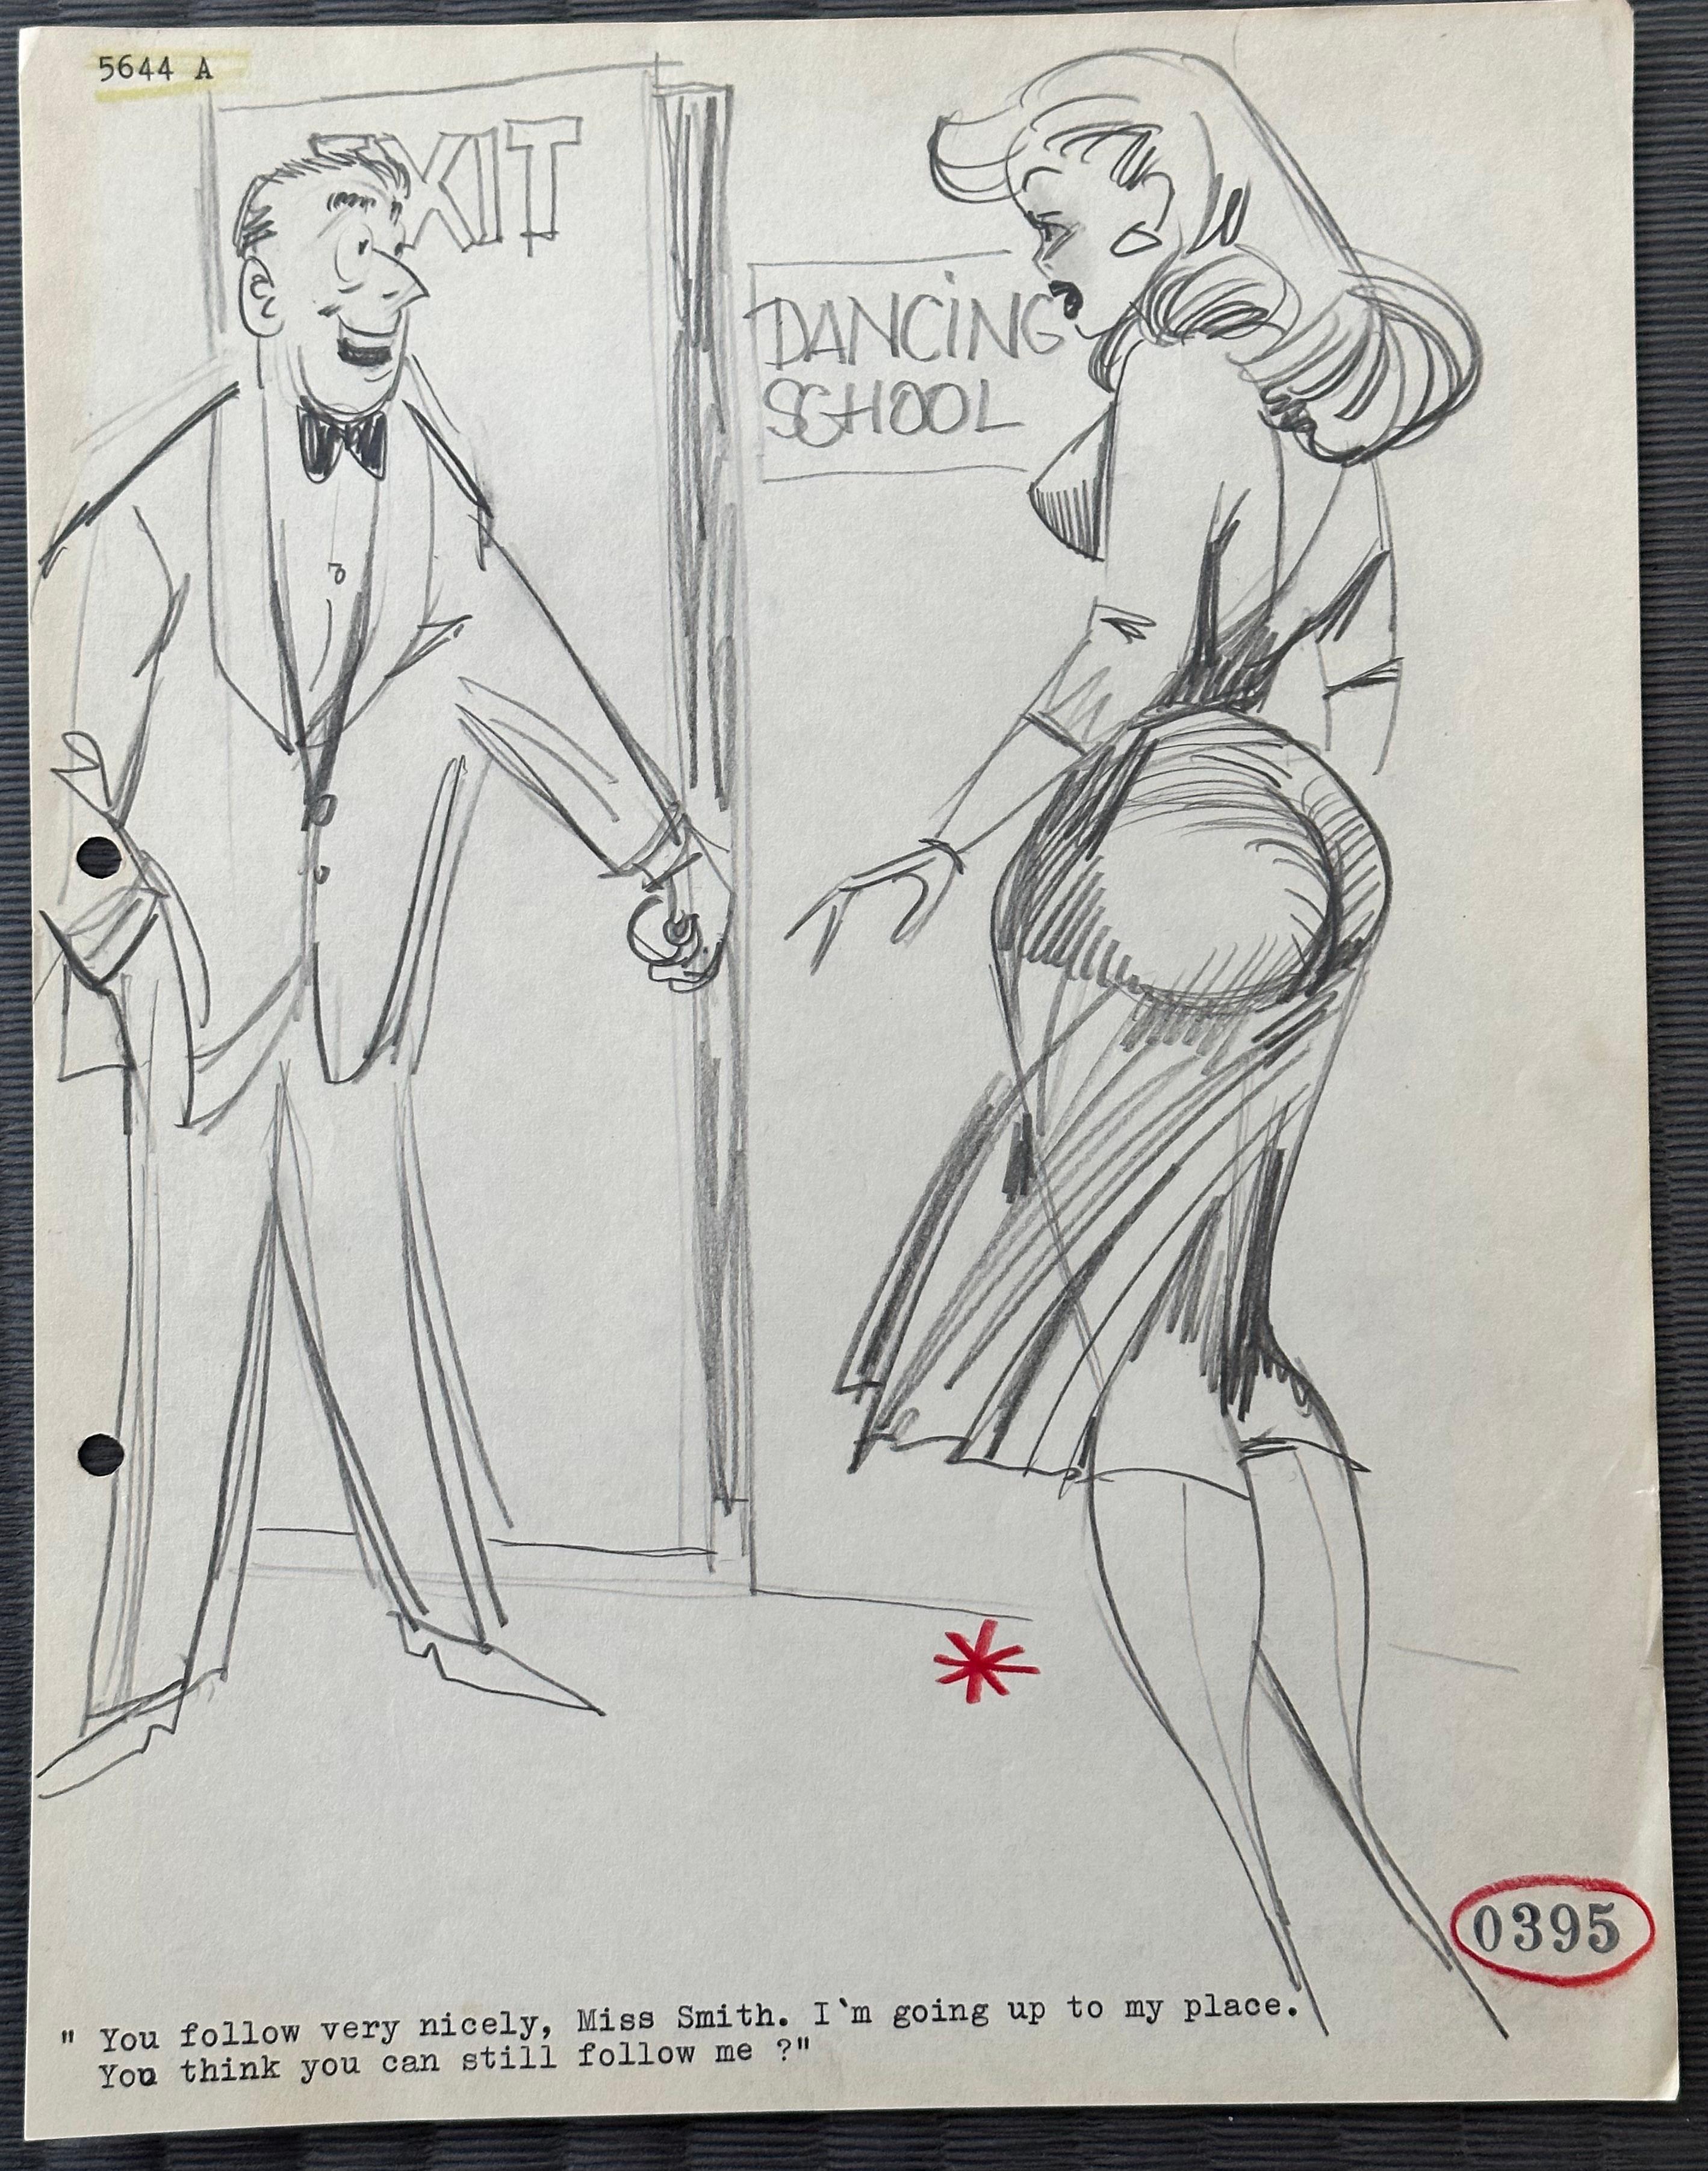 Unknown Figurative Art - Humorous Gentleman's Magazine cartoon Dancing School